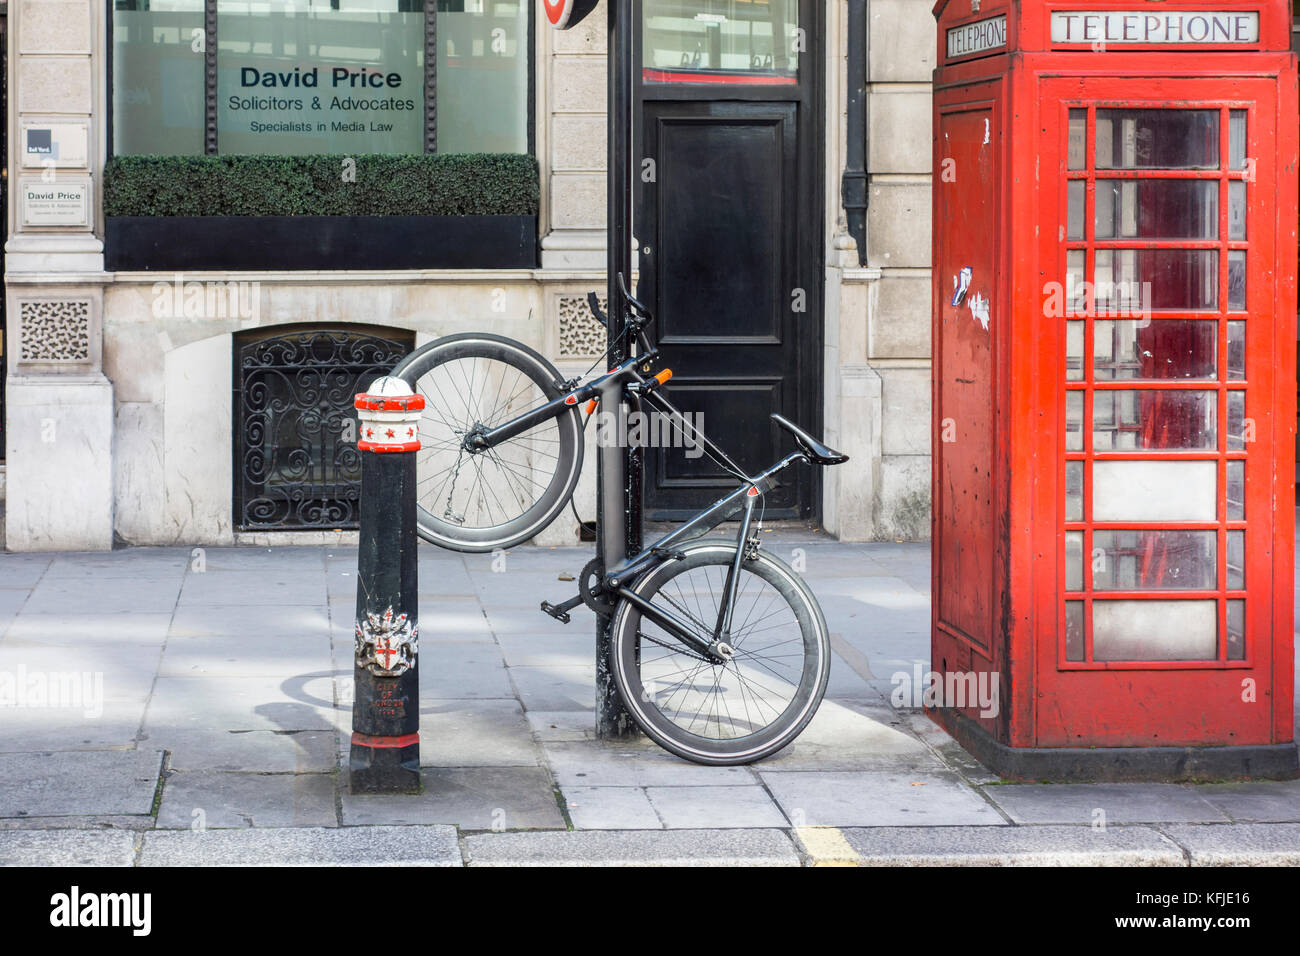 En stationnement vélo sécurisé verrouillé à un bollard post à côté d'un téléphone rouge fort, Ville de London, UK Banque D'Images